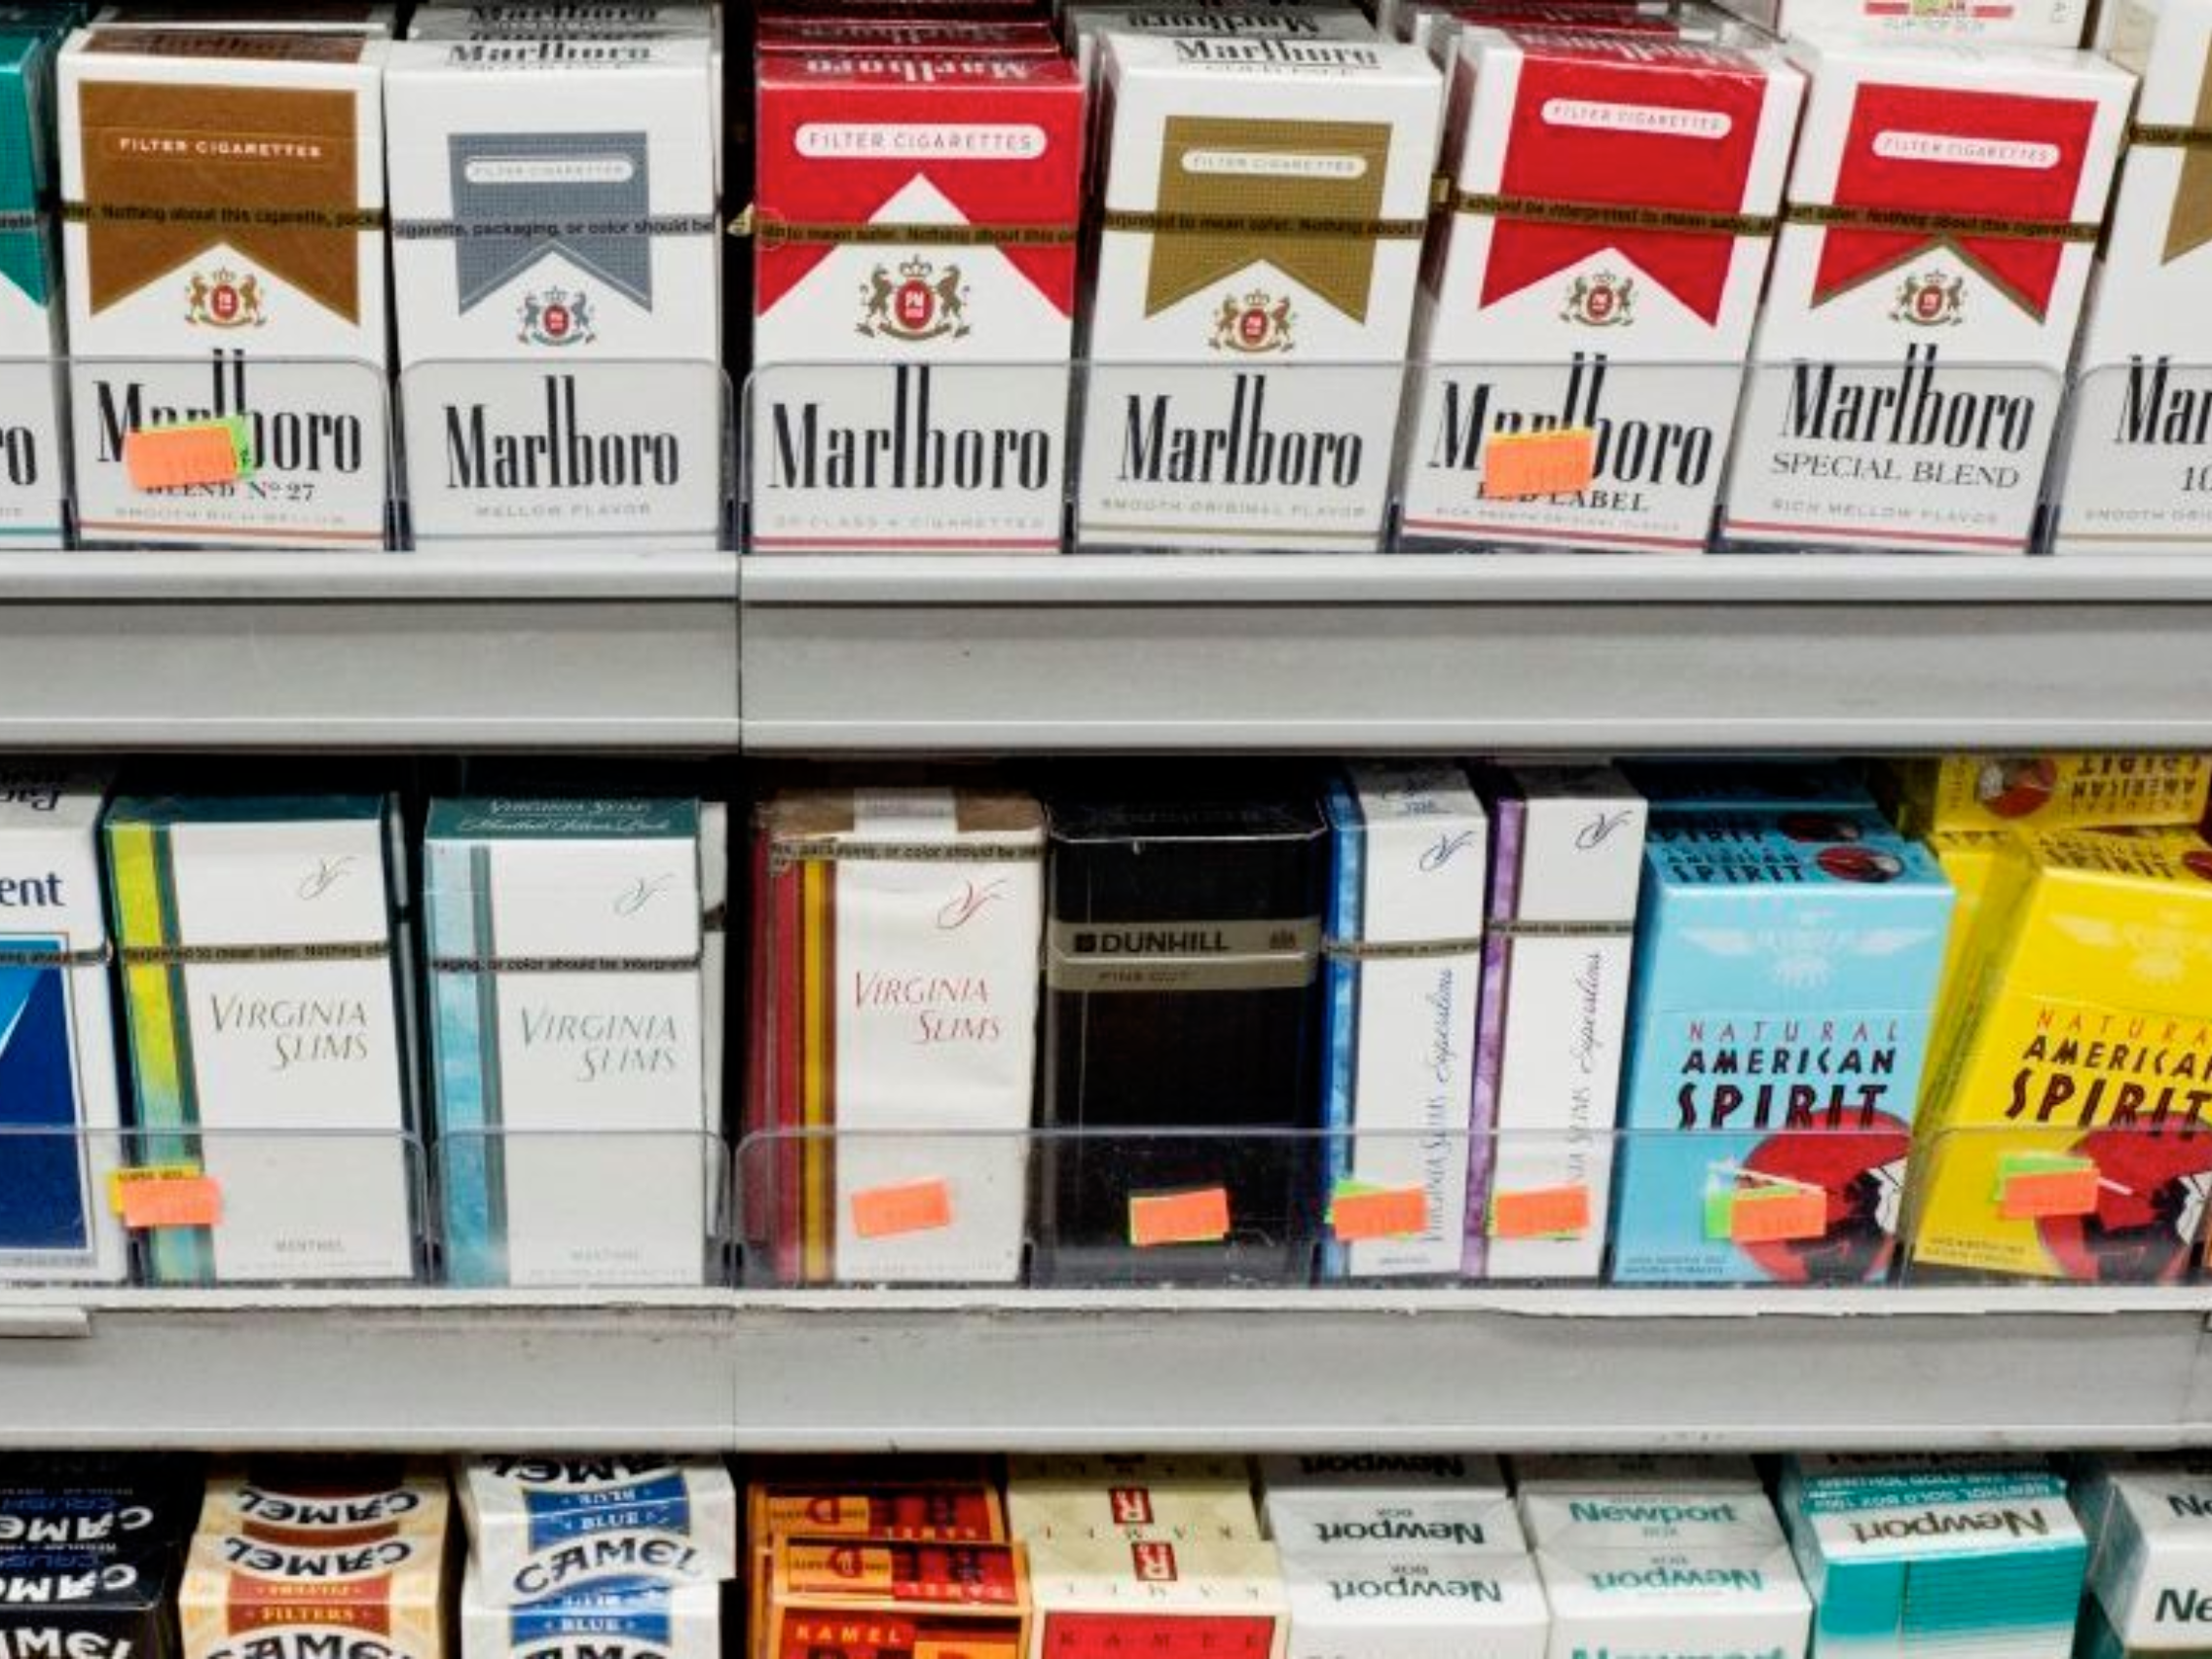 The Evolution of Popular Cigarette Brands